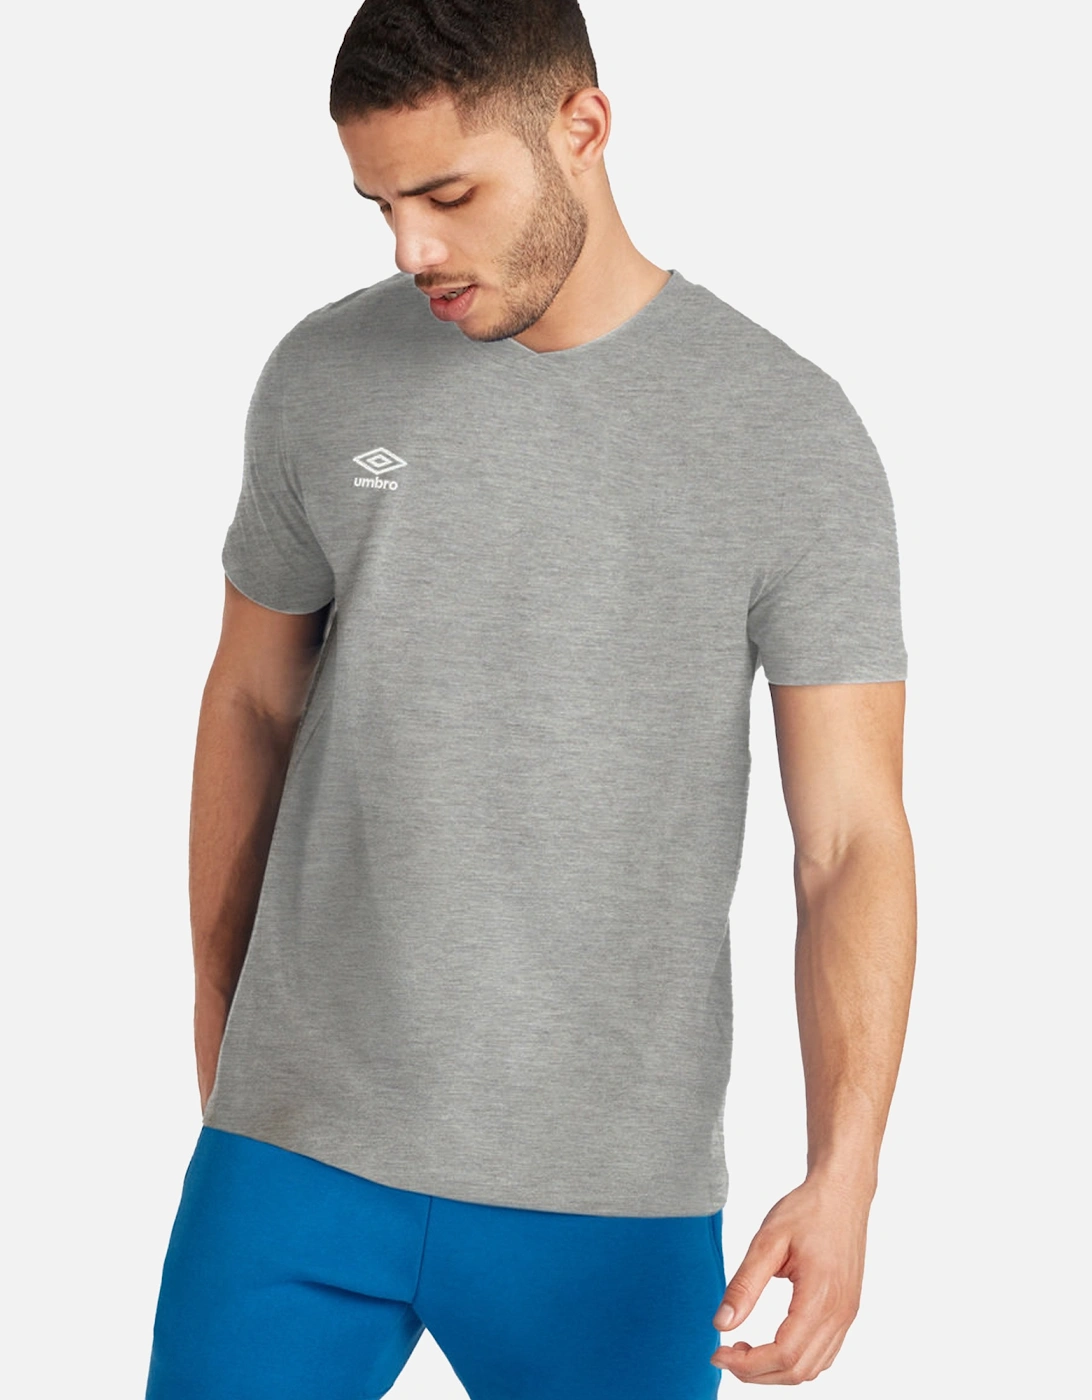 Mens Club Leisure T-Shirt